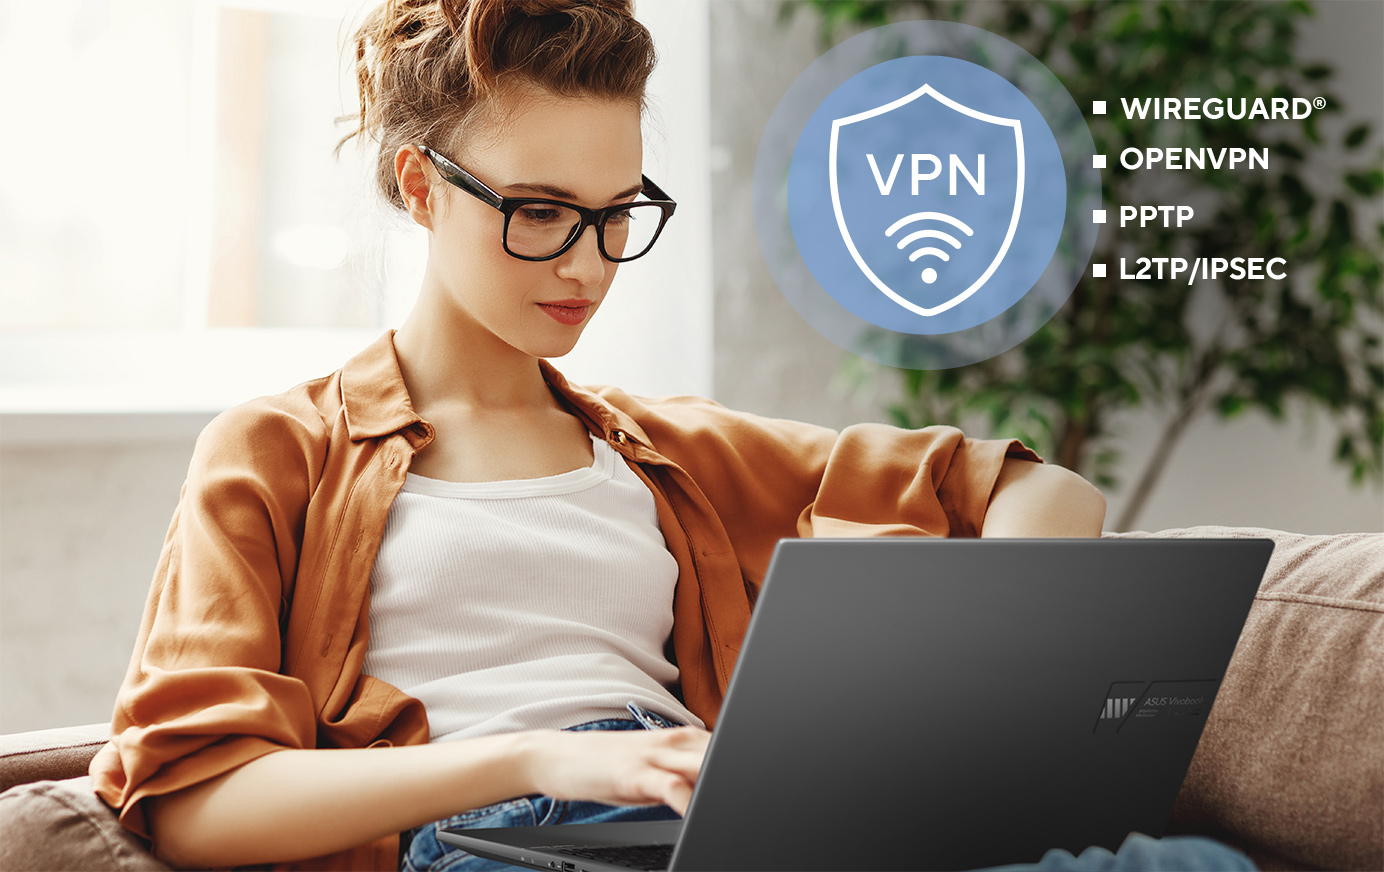 华硕路由器支持各种 VPN 安全协议，包括 WireGuard®、OpenVPN、PPTP 及 L2TP/IPSec。